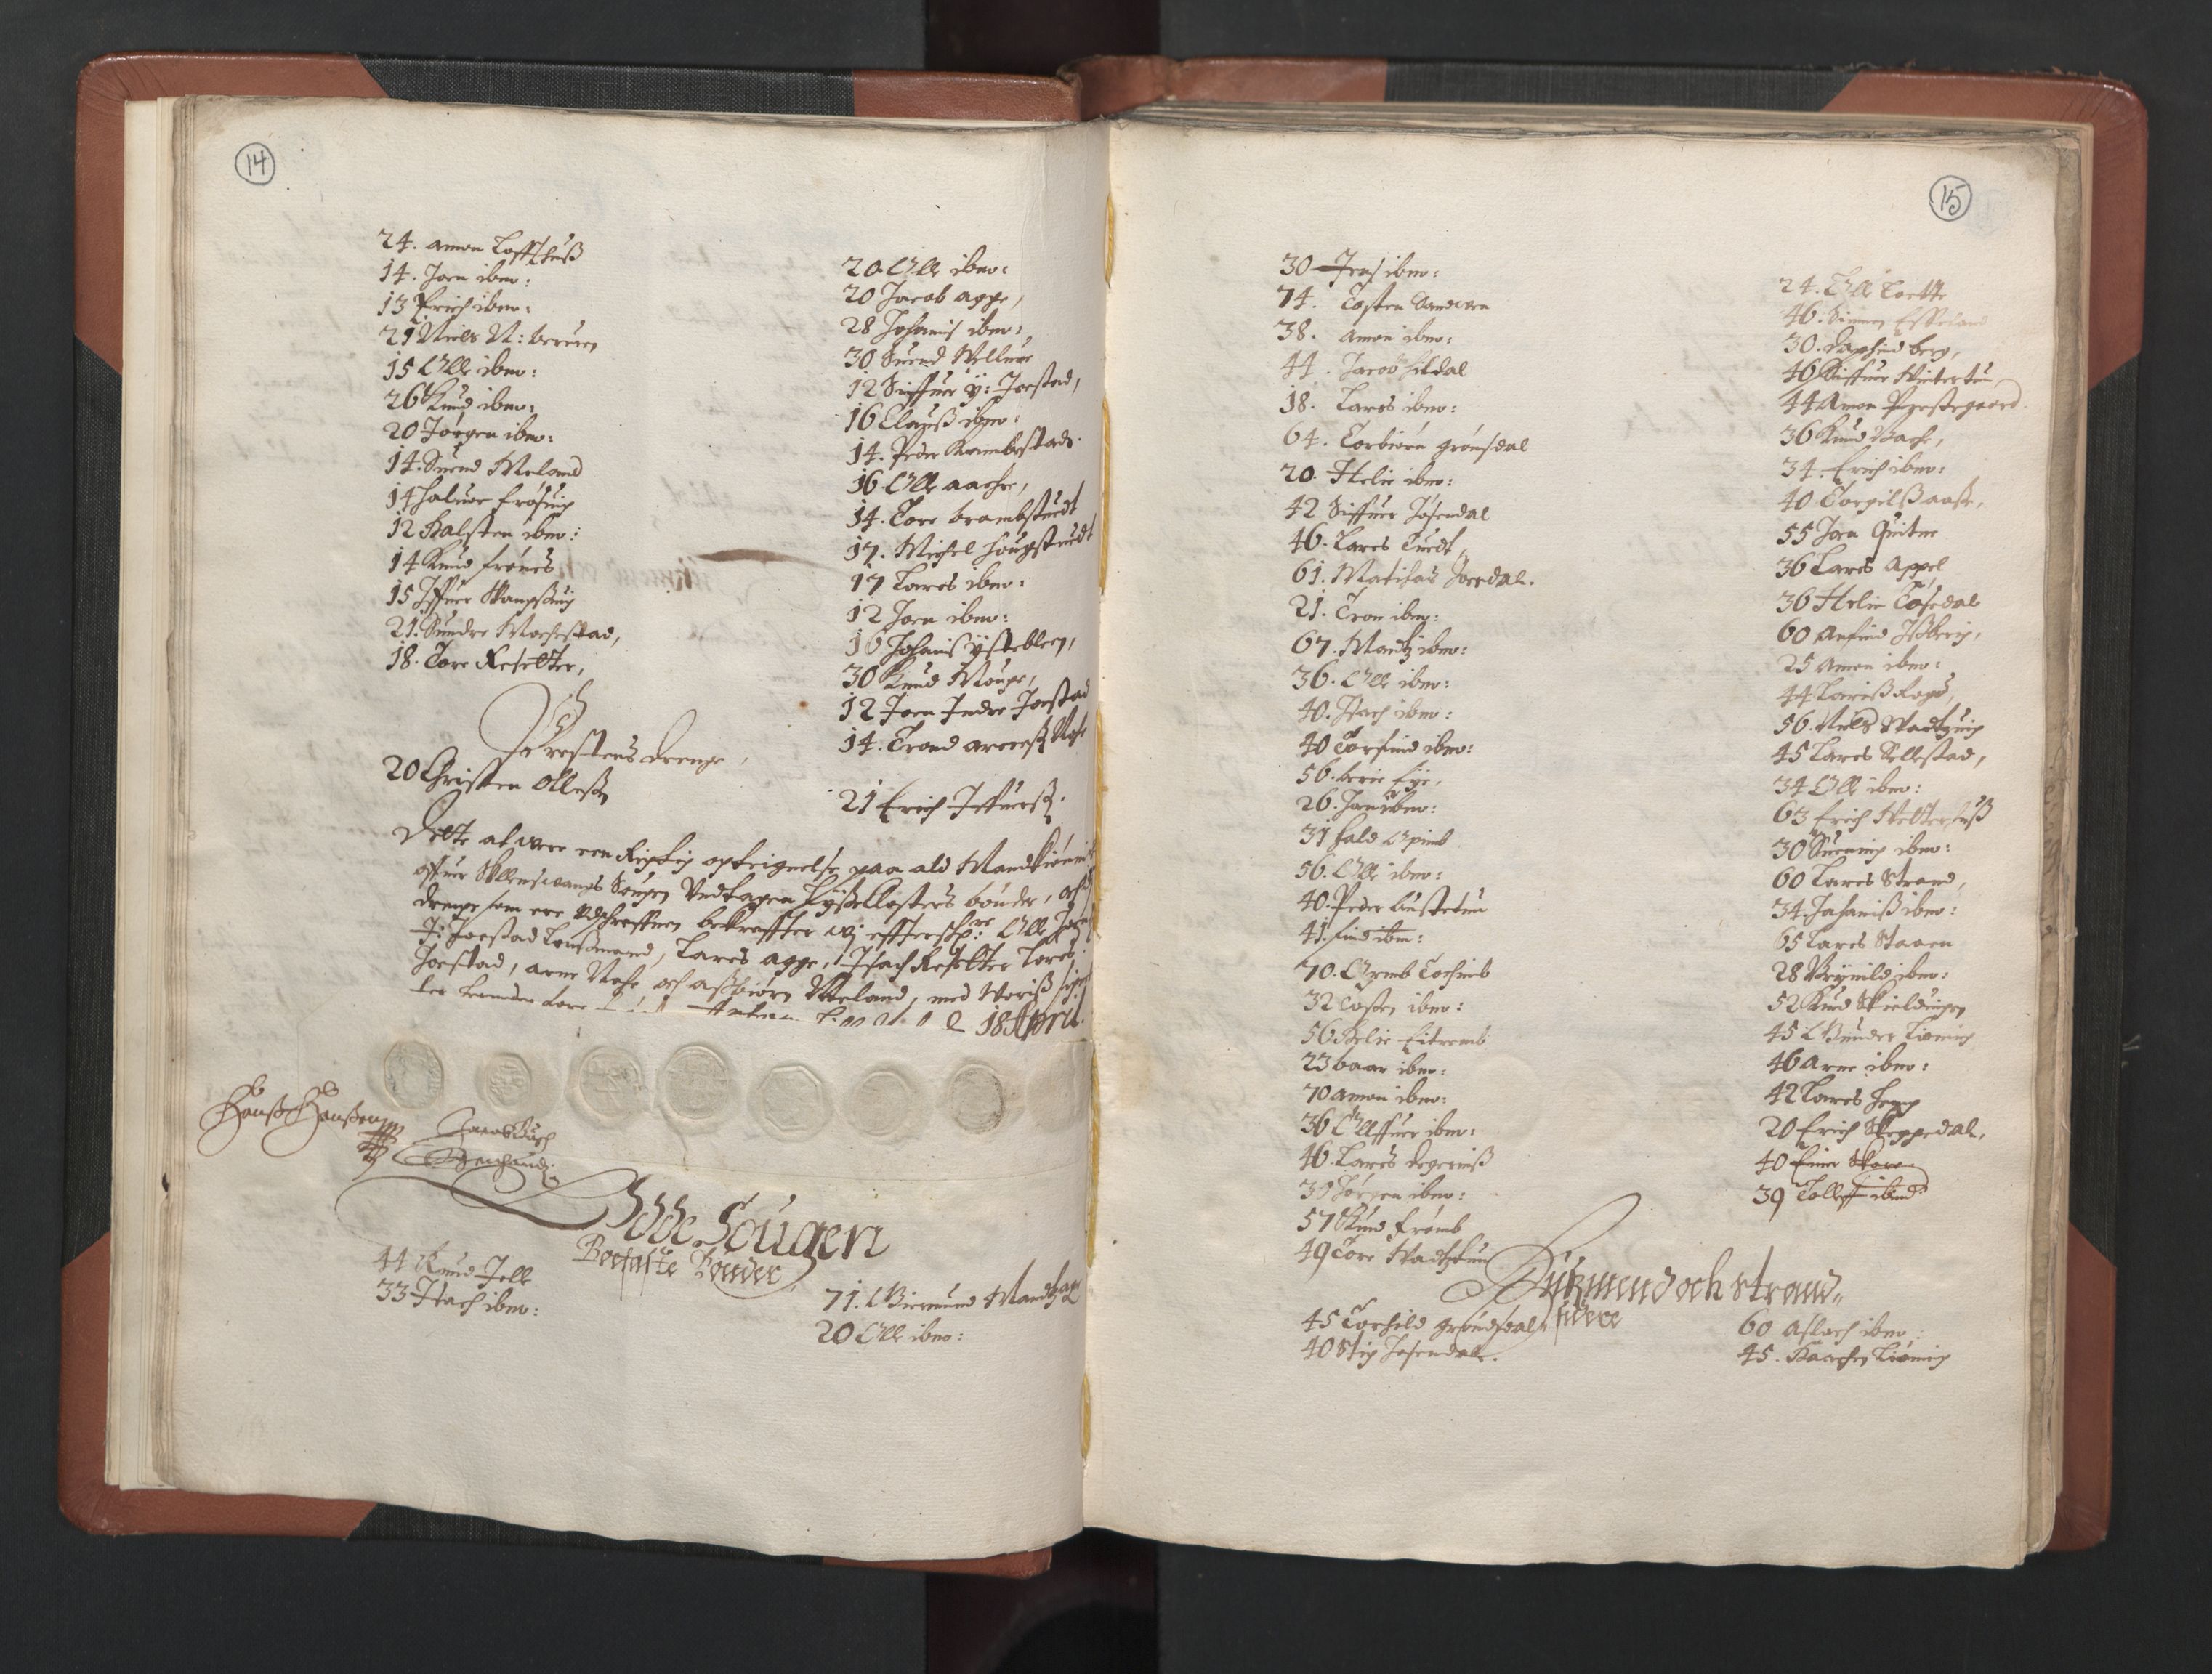 RA, Bailiff's Census 1664-1666, no. 14: Hardanger len, Ytre Sogn fogderi and Indre Sogn fogderi, 1664-1665, p. 14-15